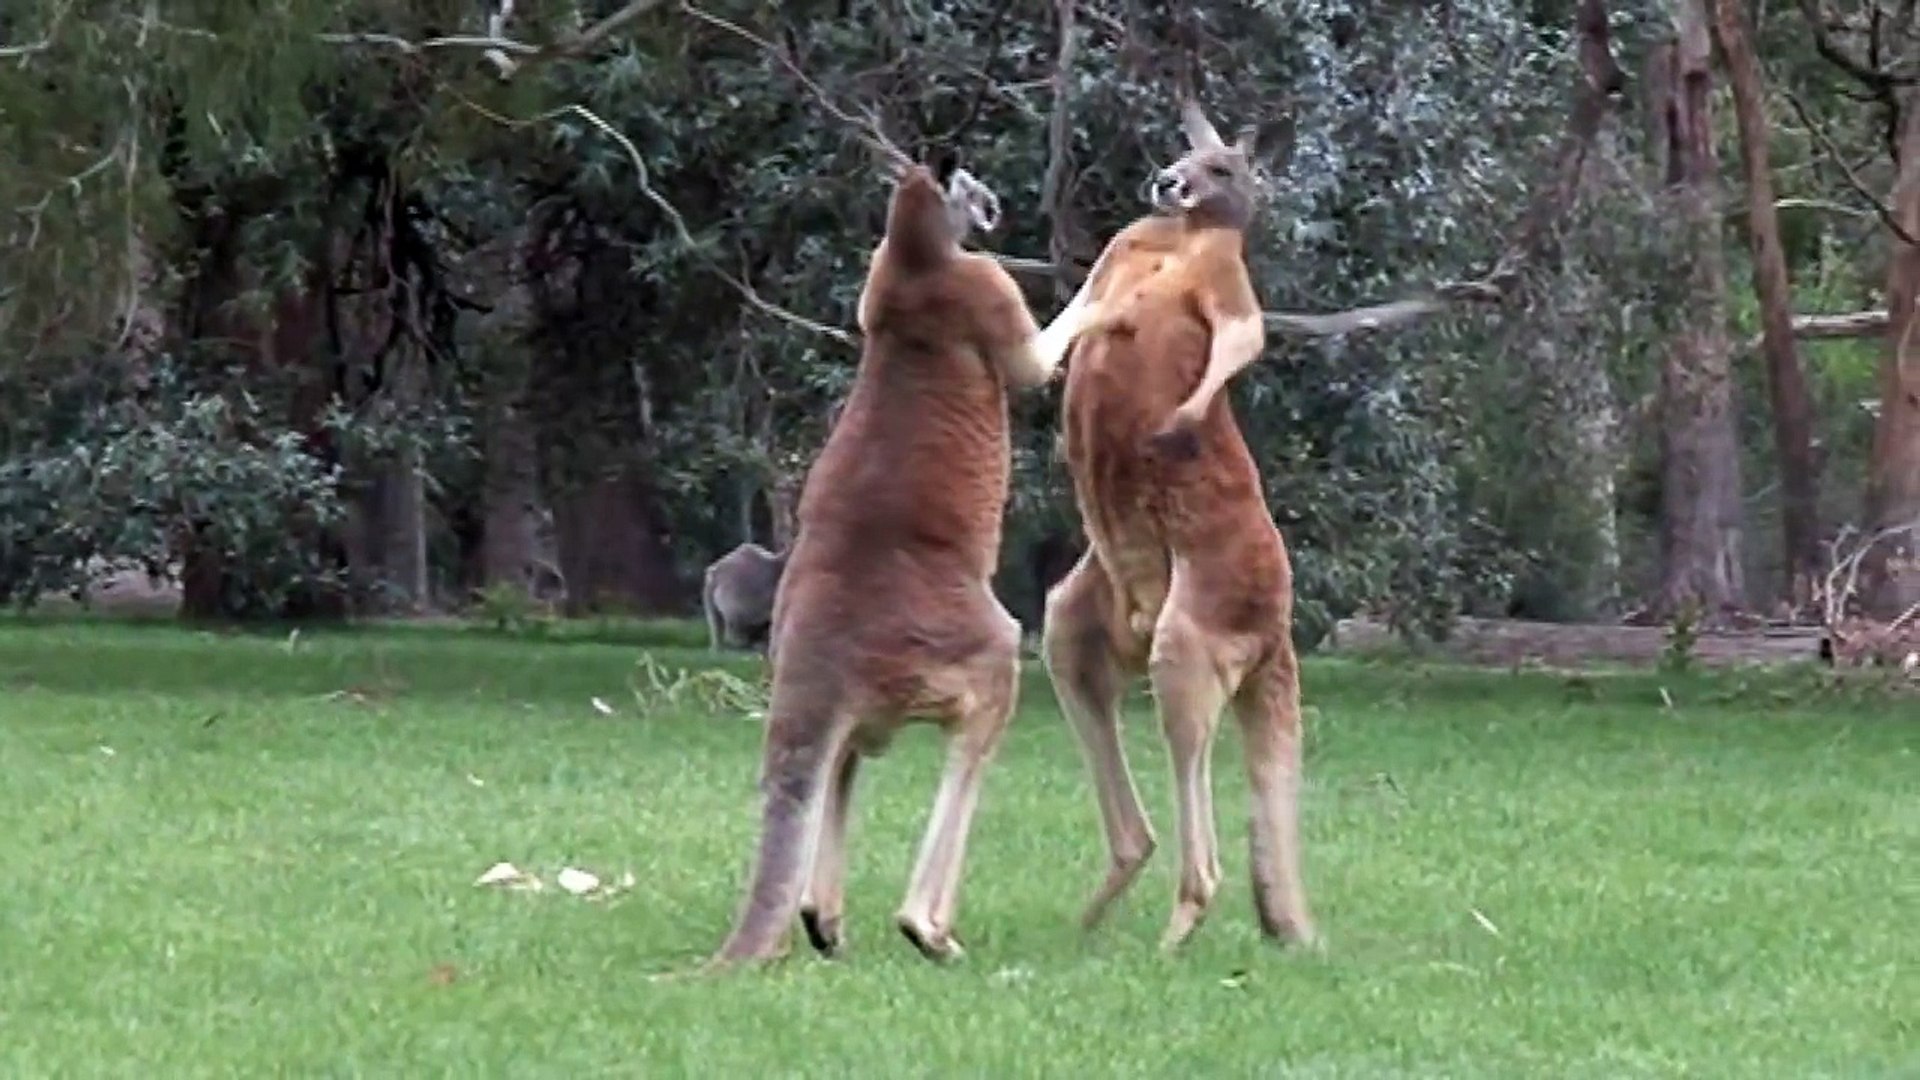 Kick Boxing Kangaroos